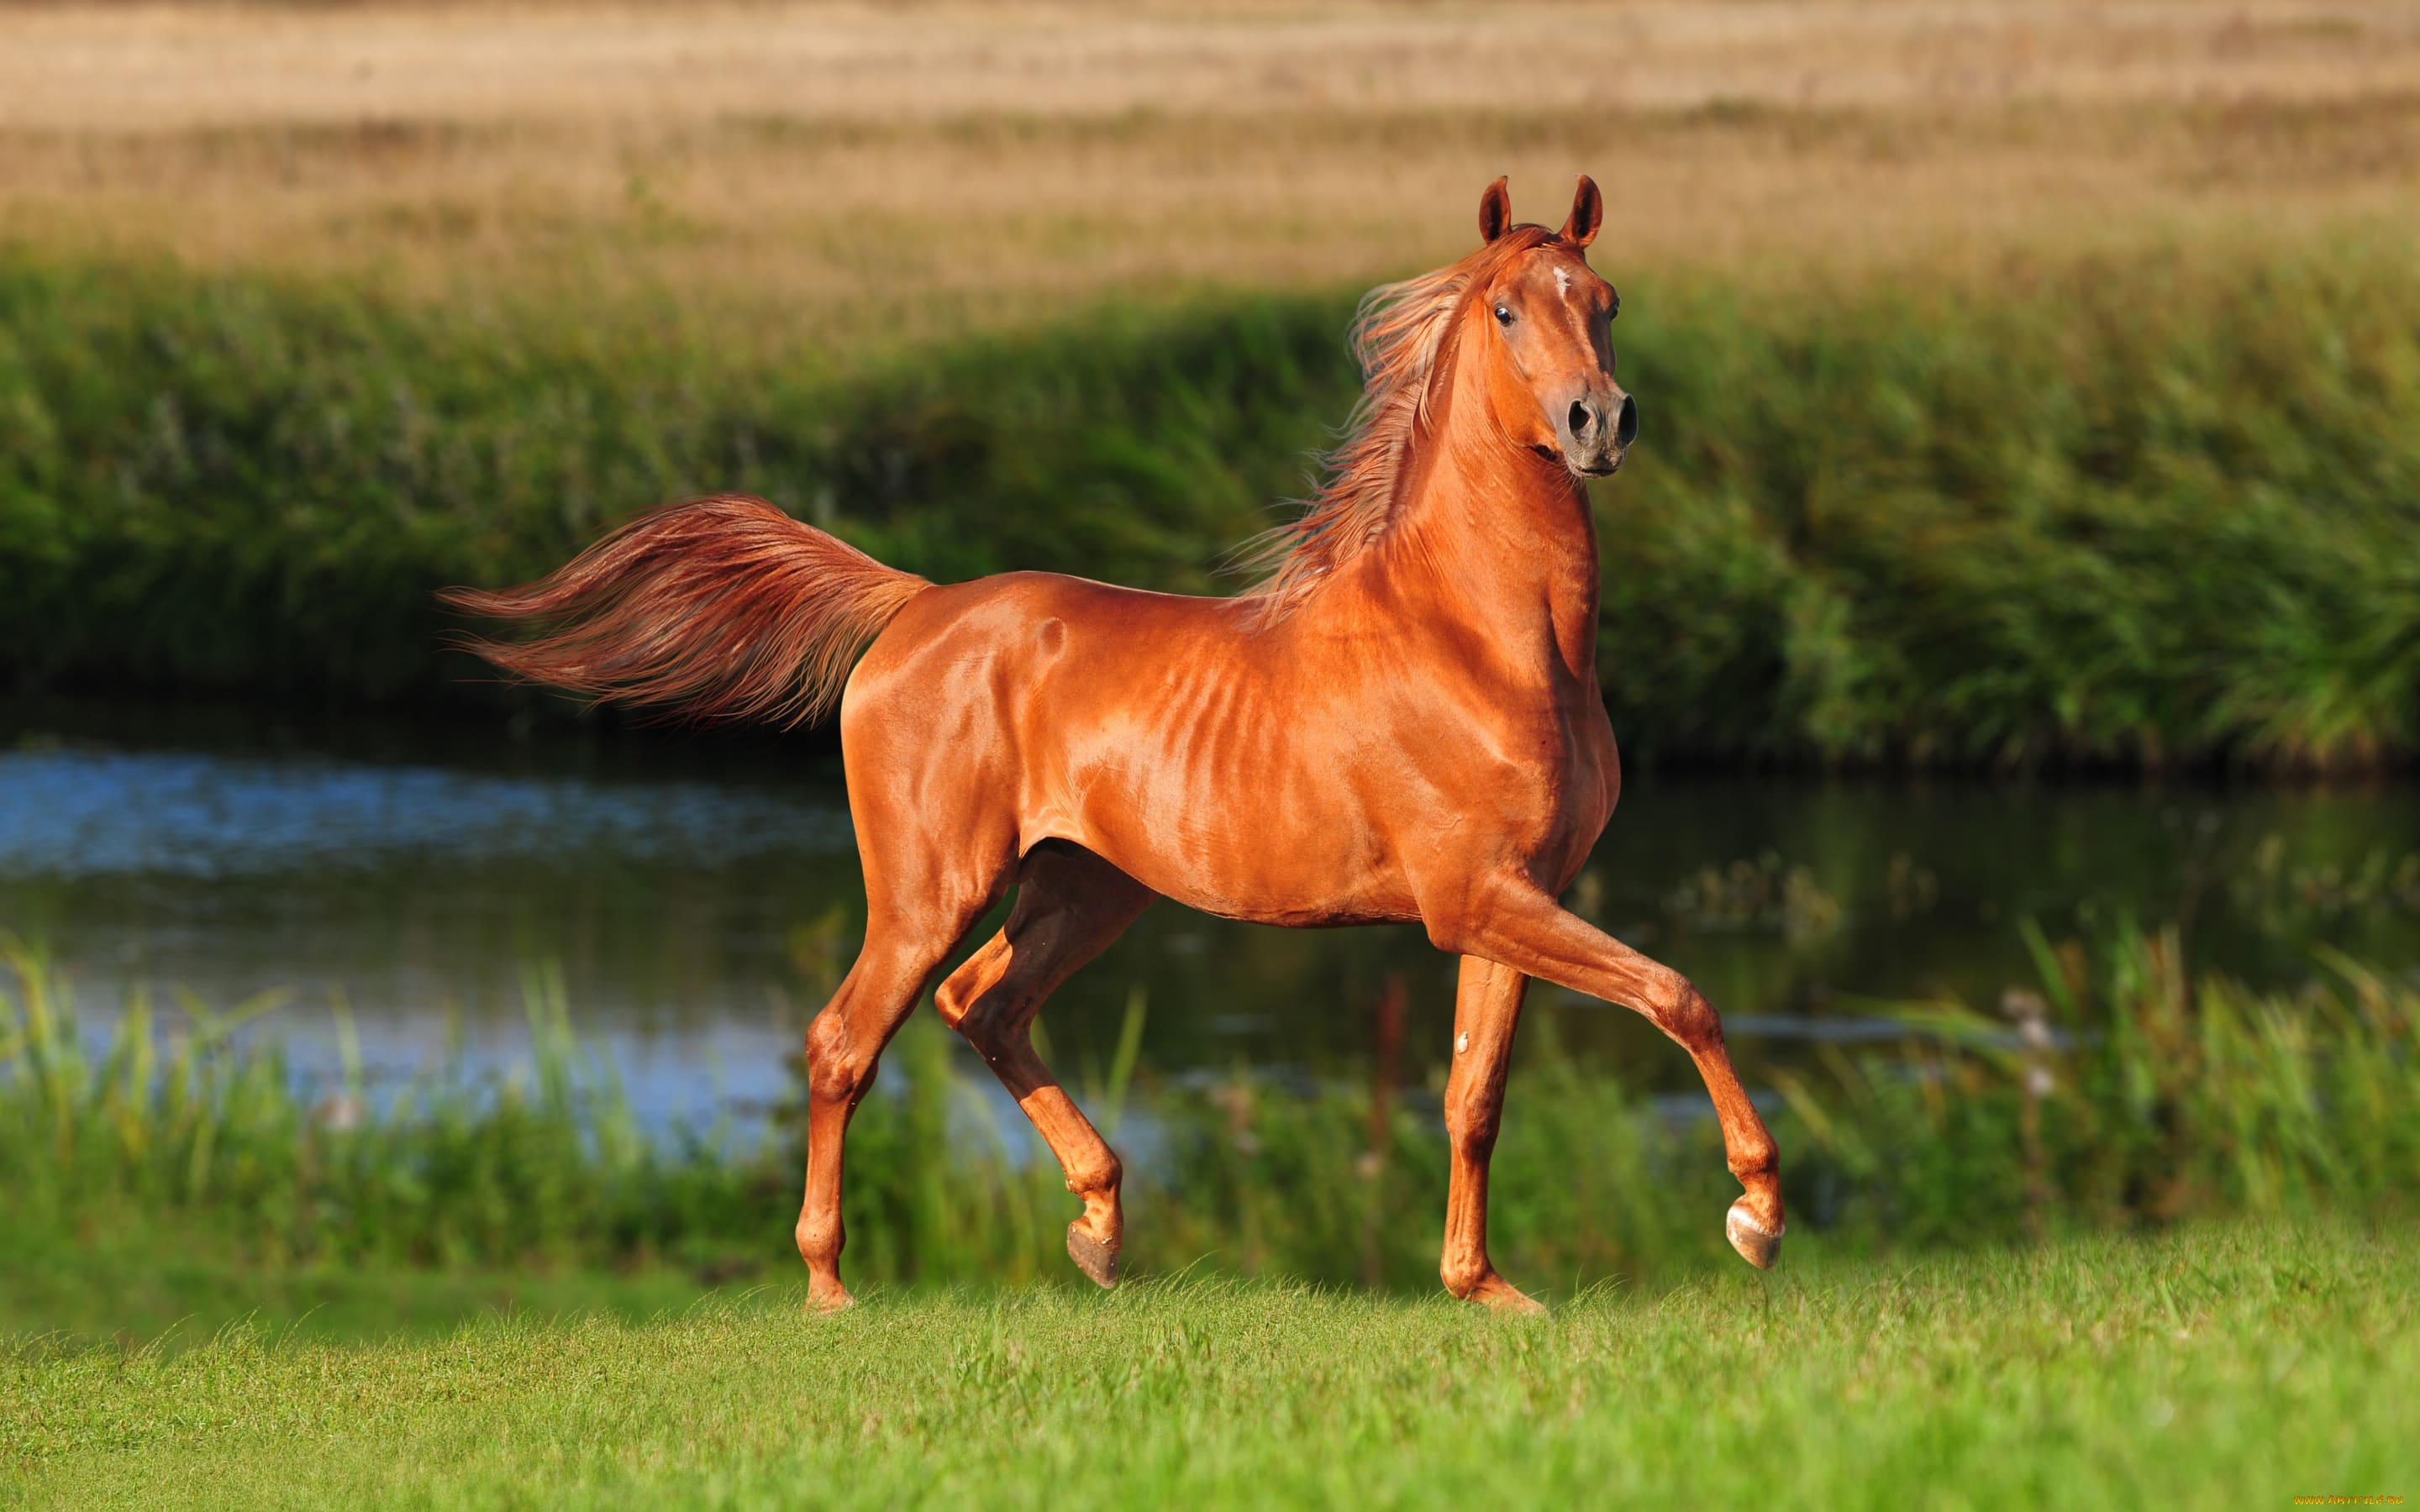 Horse Foto фото в формате jpeg, распечатайте фото или смотрите онлайн